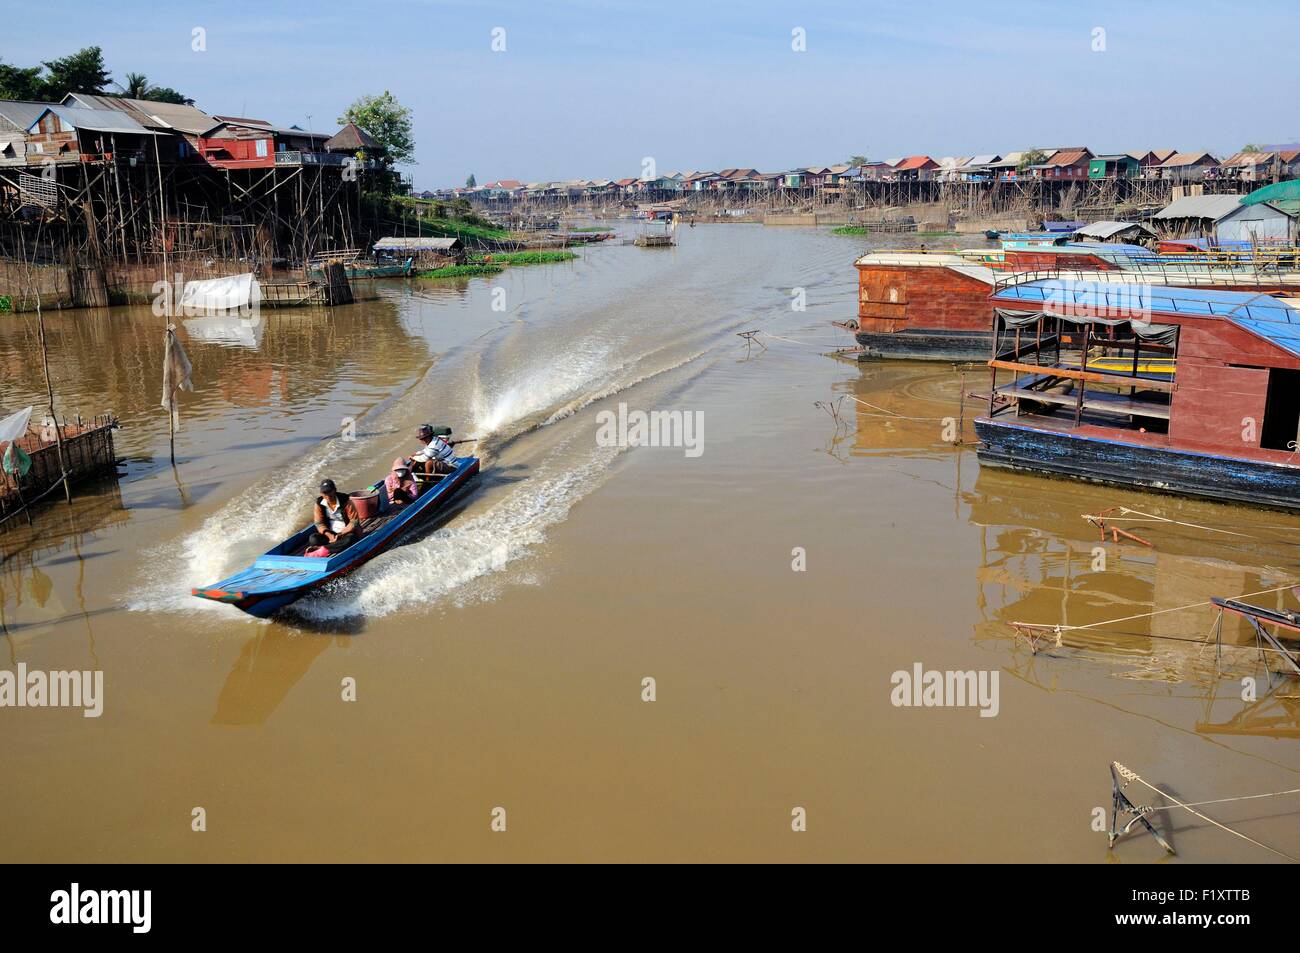 Le Cambodge, la province de Siem Reap, Kompong Khleang, Tonle Sap, en bateau sur la rivière avec des maisons sur pilotis Banque D'Images